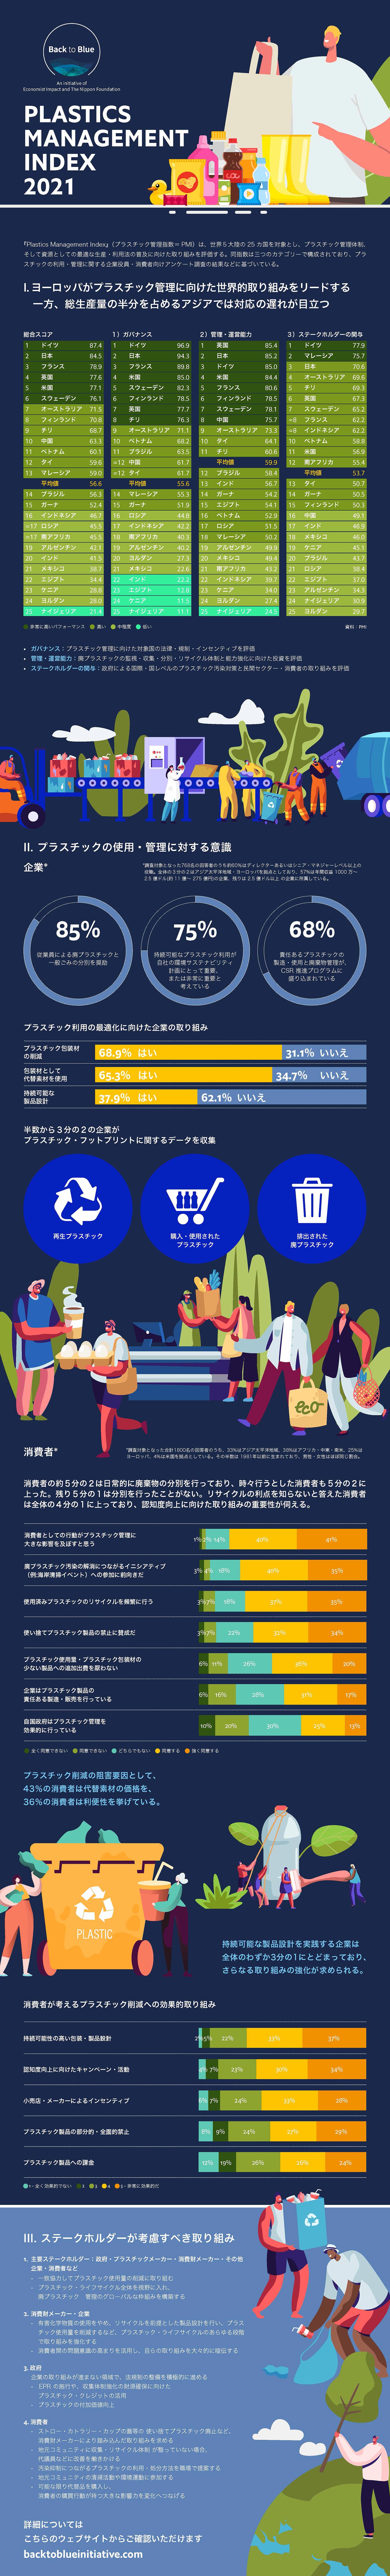 プラスチックの消費・管理をめぐる企業と消費者の態度